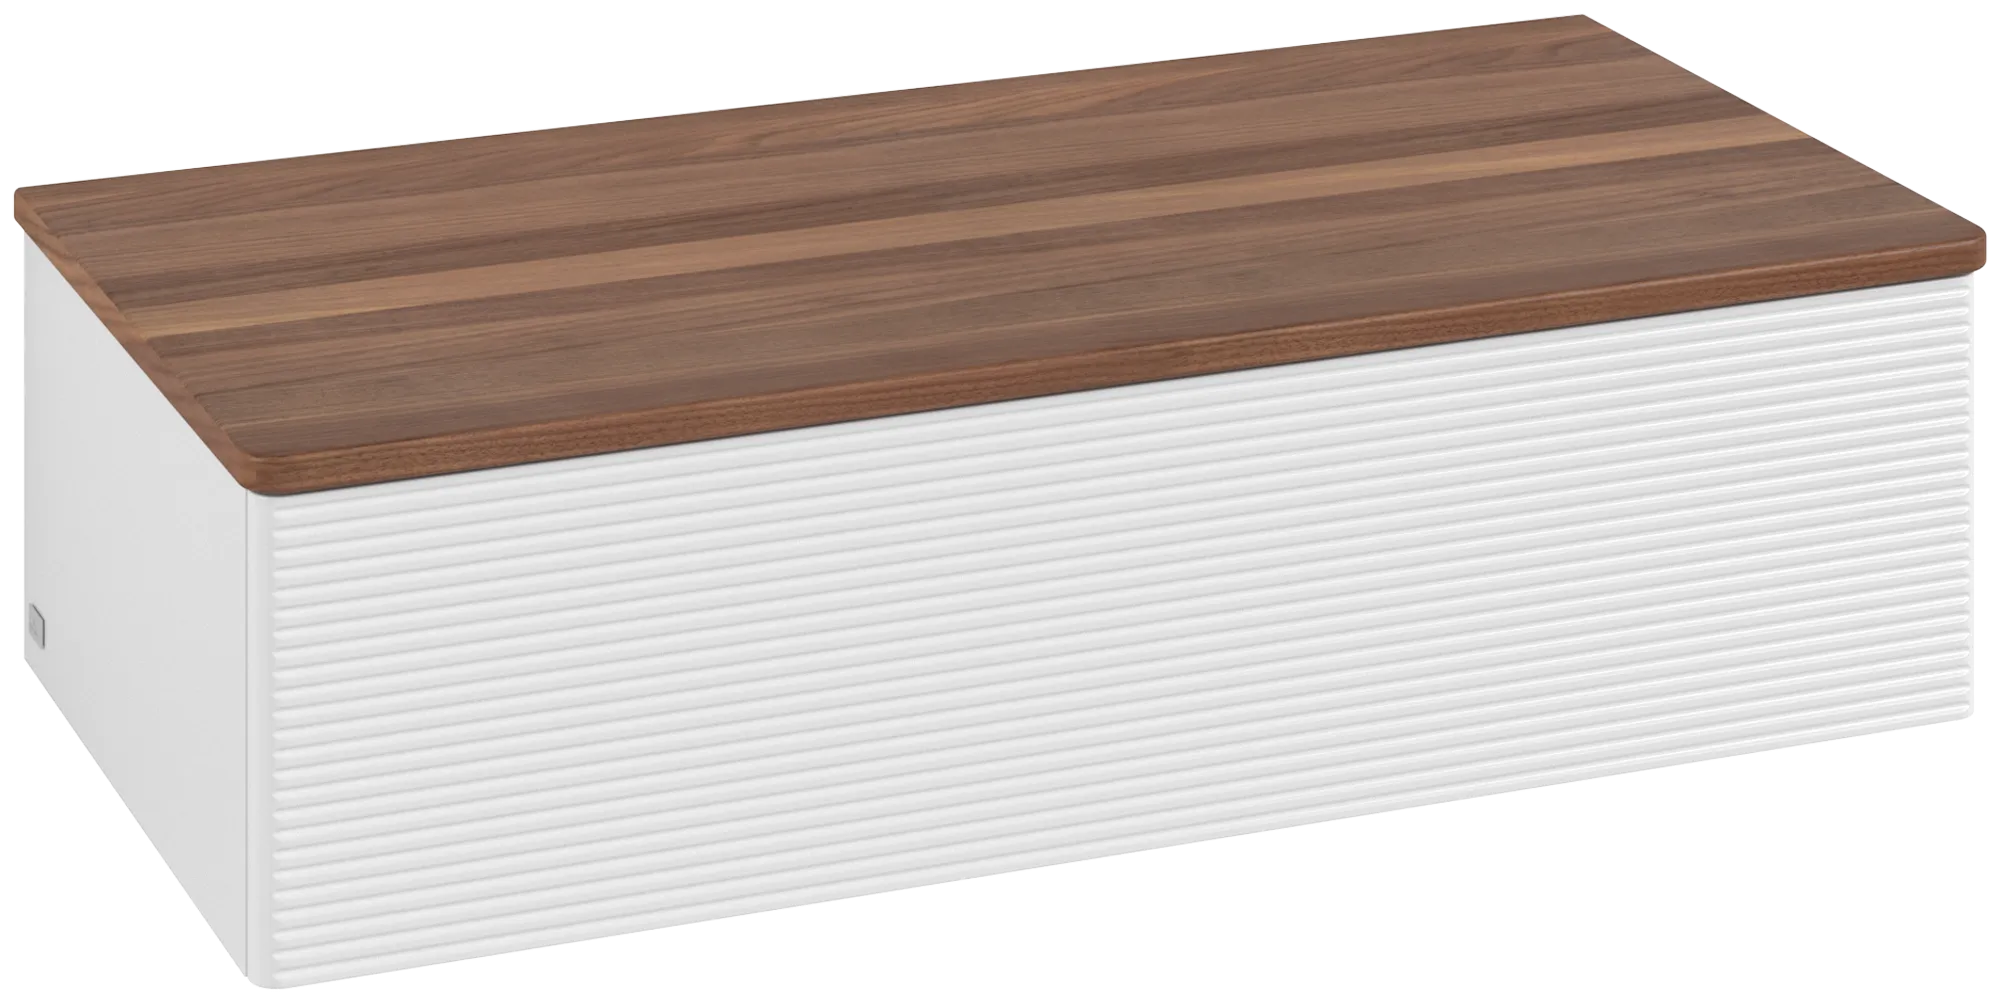 εικόνα του VILLEROY BOCH Antao Sideboard, 1 pull-out compartment, 1000 x 268 x 500 mm, Front with grain texture, Glossy White Lacquer / Warm Walnut #K40102GF